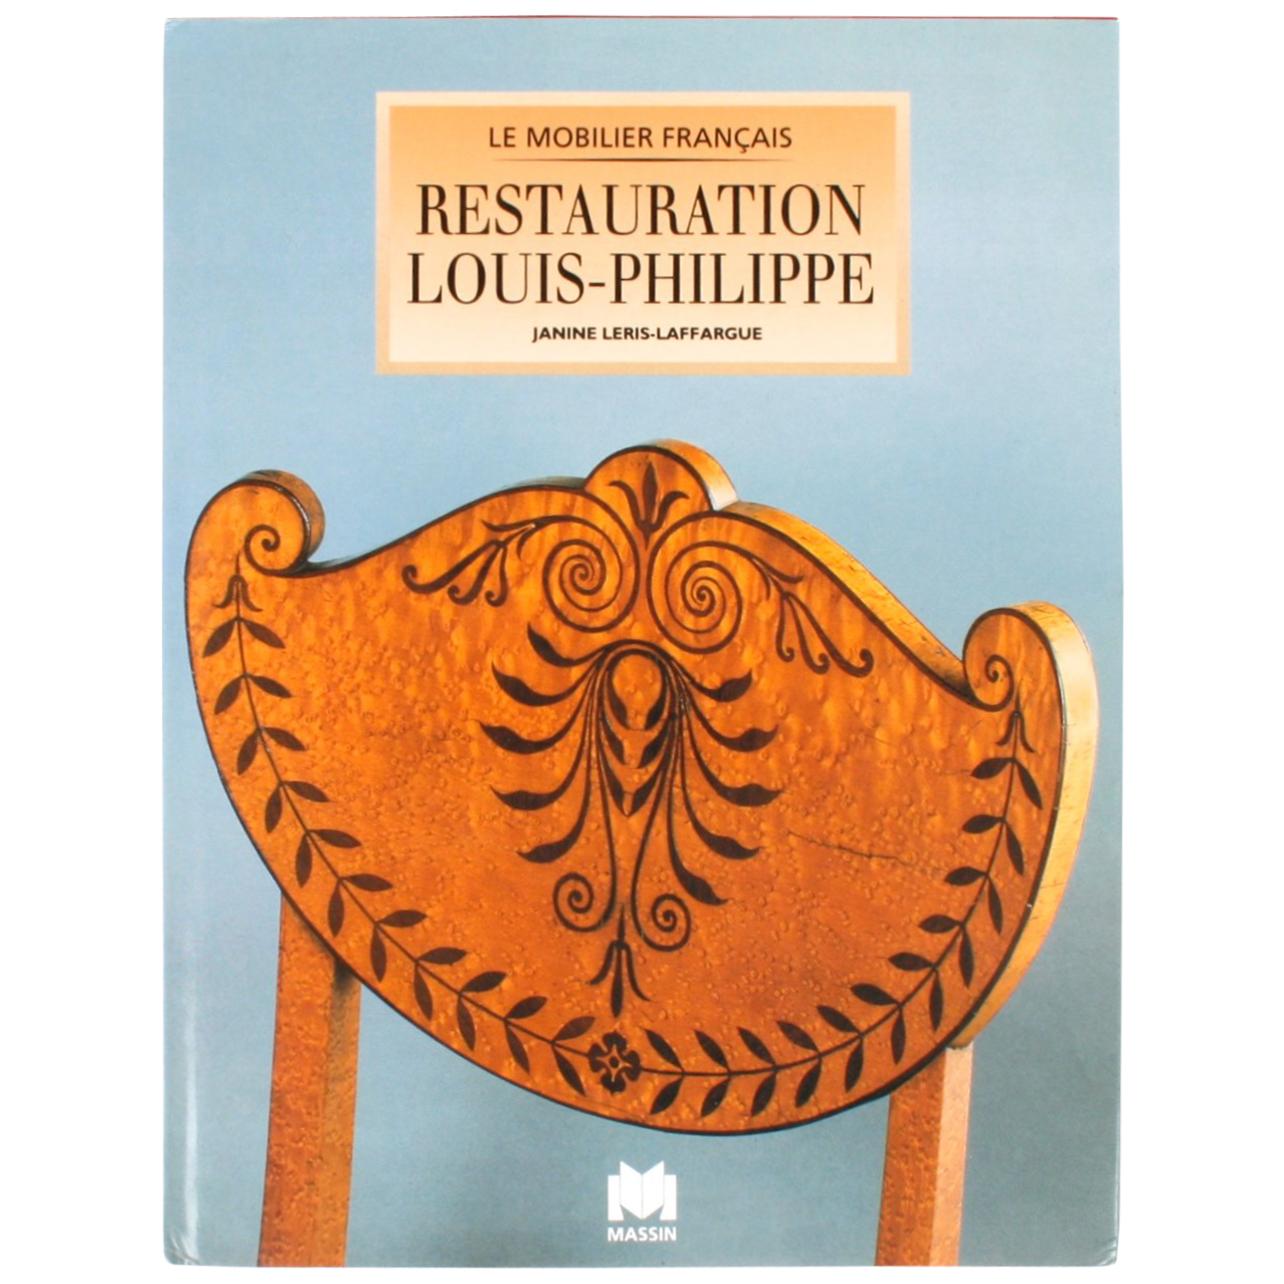 Restauration, Louis-Philippe by Janine Leris-Laffargue, 1st Edition For Sale